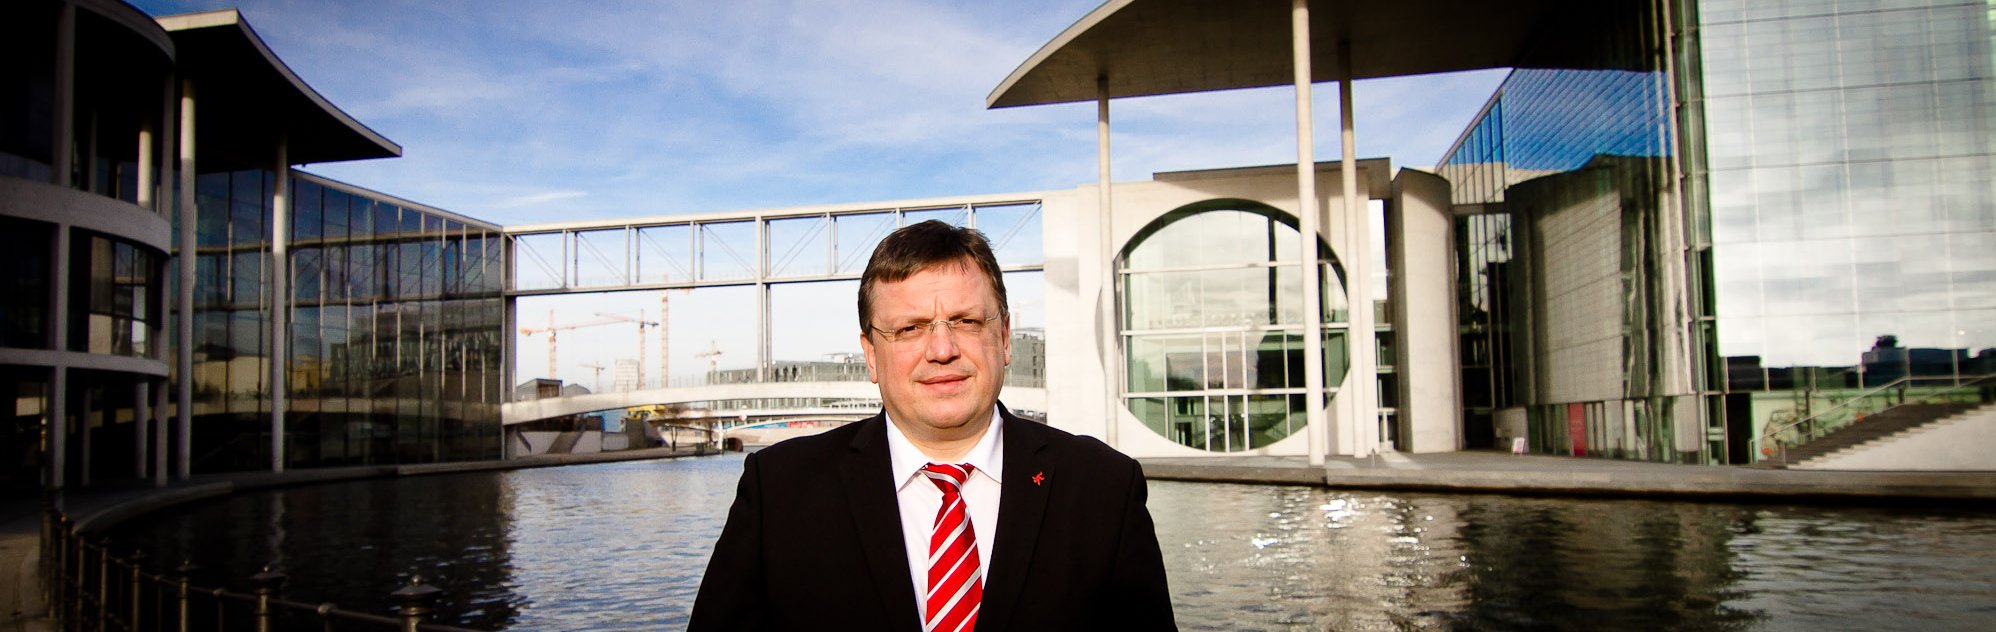 Andreas Rimkus begrüßt den heutigen Beschluss zur Neuregelung des Kraft-Wärme-Kopplungsgesetzes